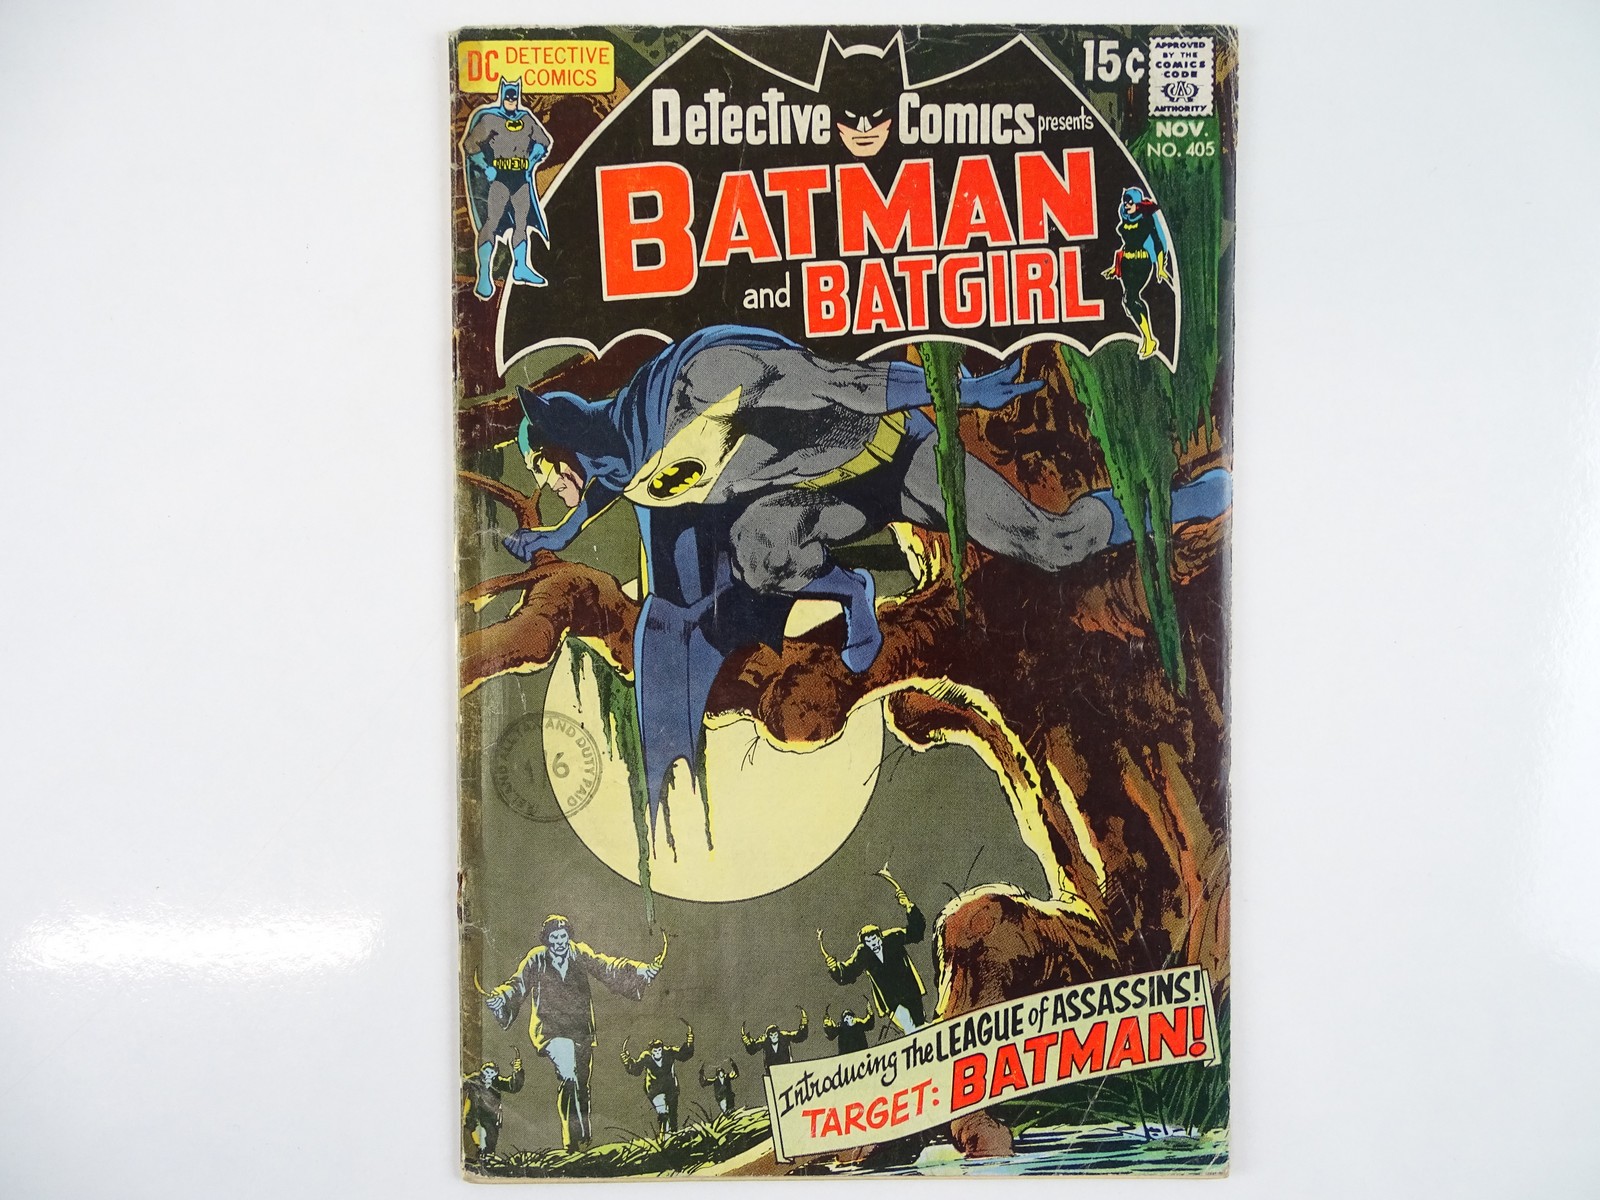 Lot 430 - DETECTIVE COMICS: BATMAN & BATGIRL #405 -